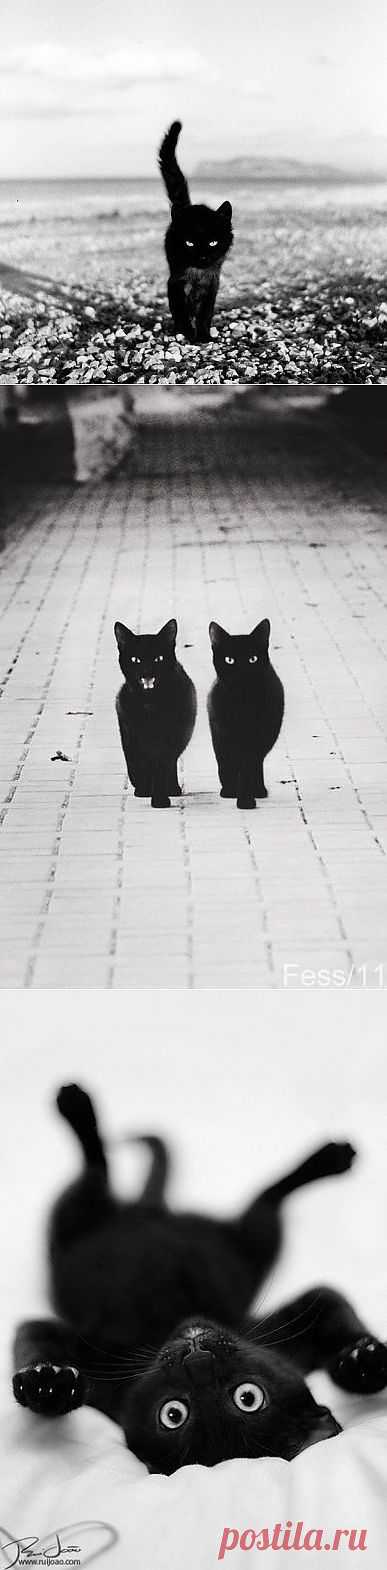 Жил да был черный кот за углом...